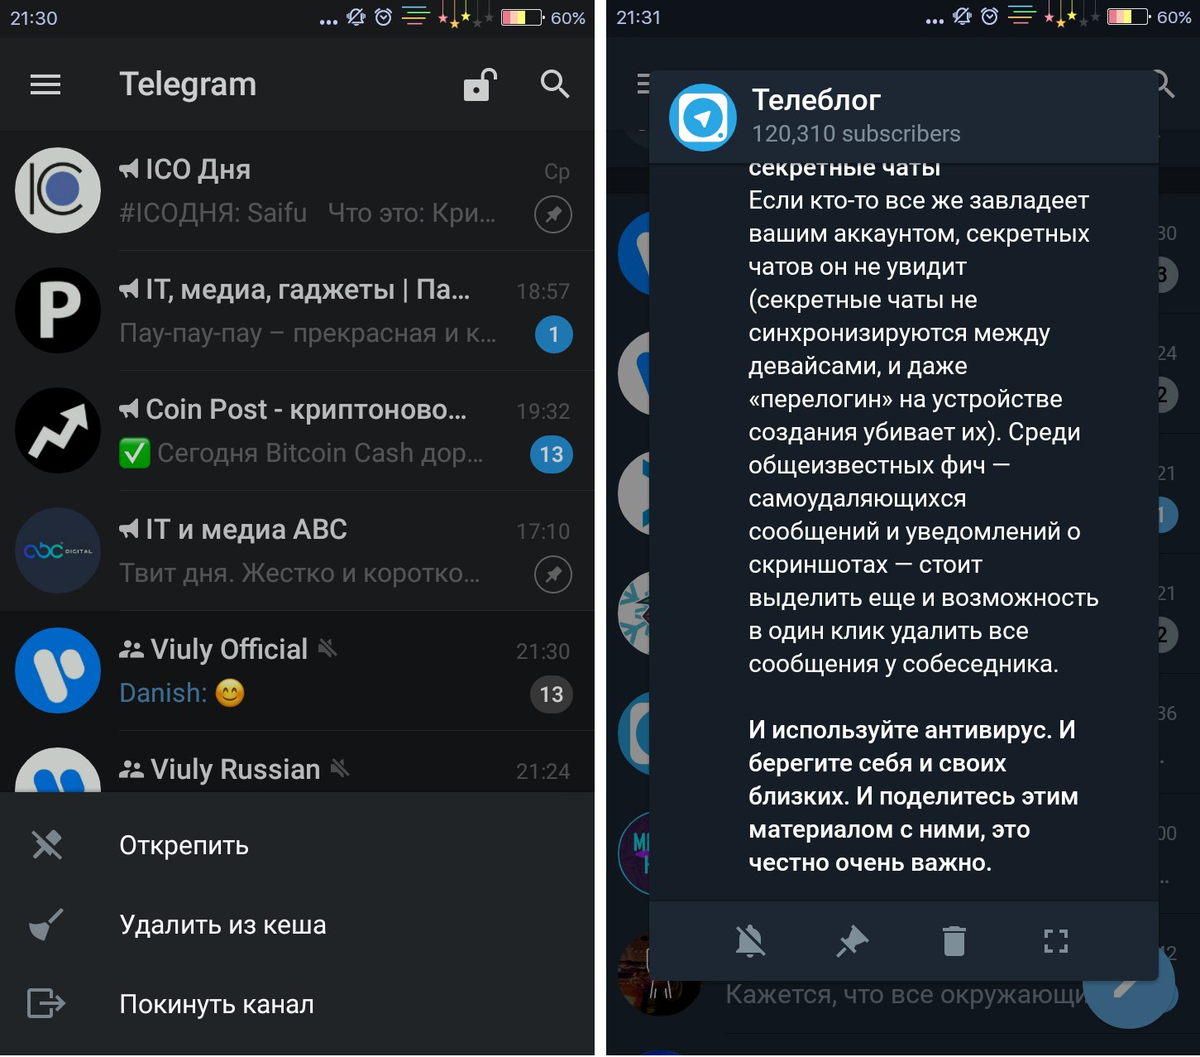 Телеграмм это русская платформа фото 62